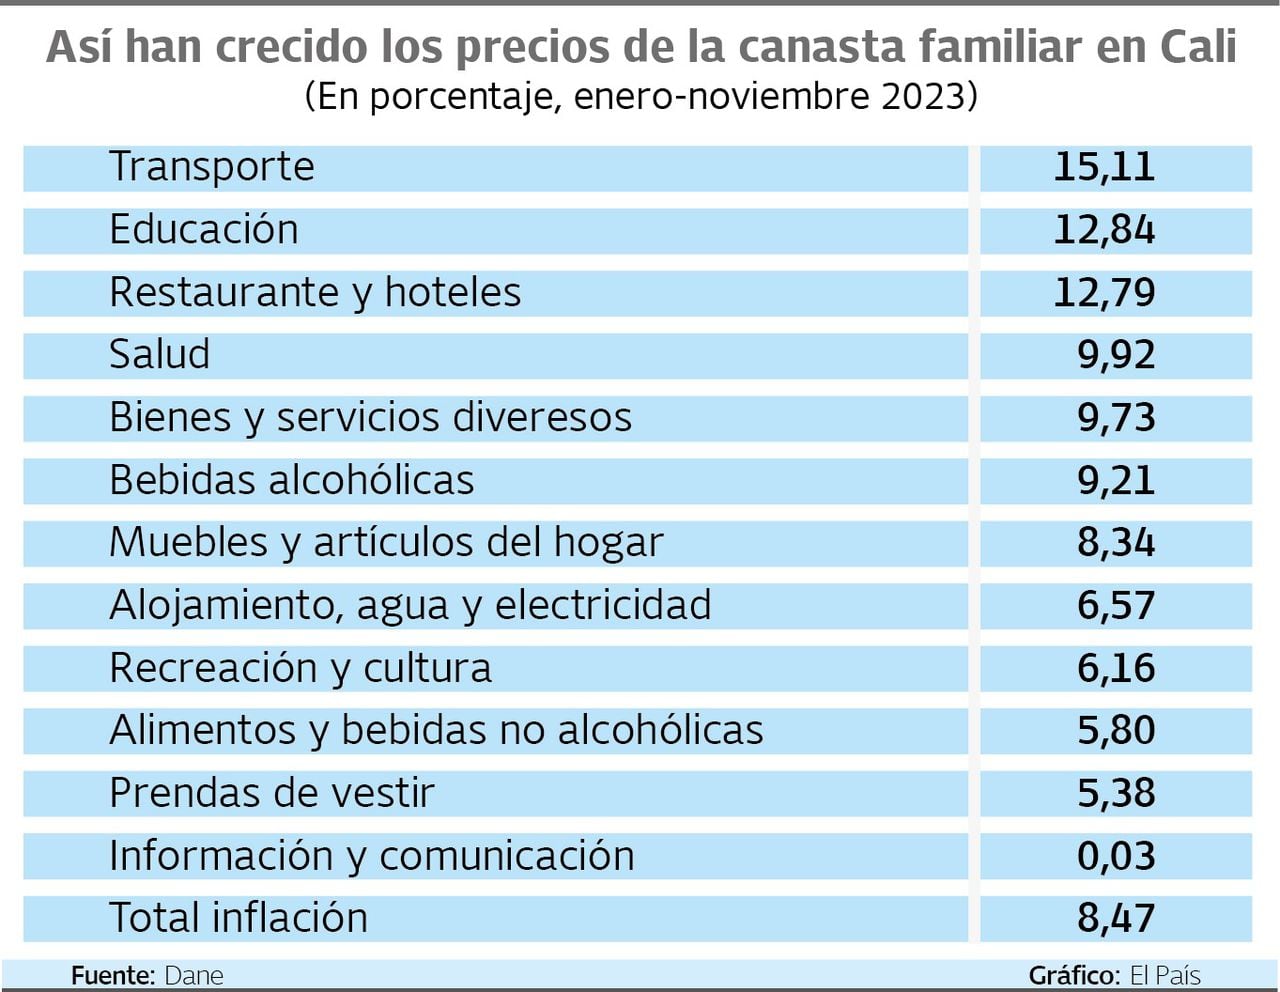 Precios de la canasta familiar en Cali, enero - noviembre 2023
Gráfico: El País    Fuente: Dane